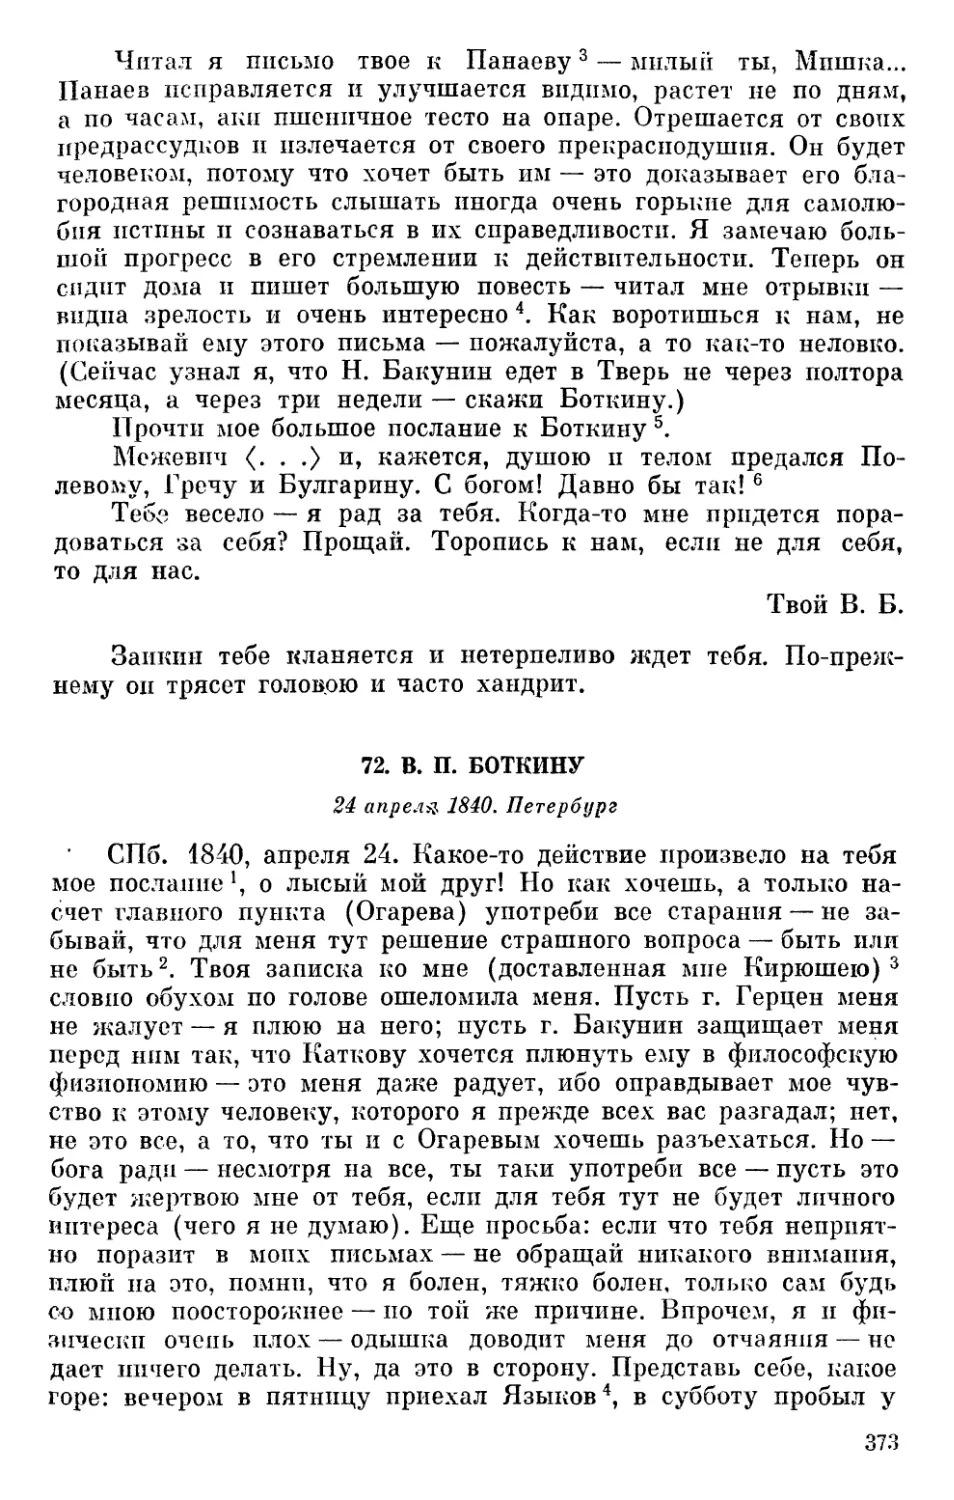 72. В. П. Боткину. 24 апреля1840